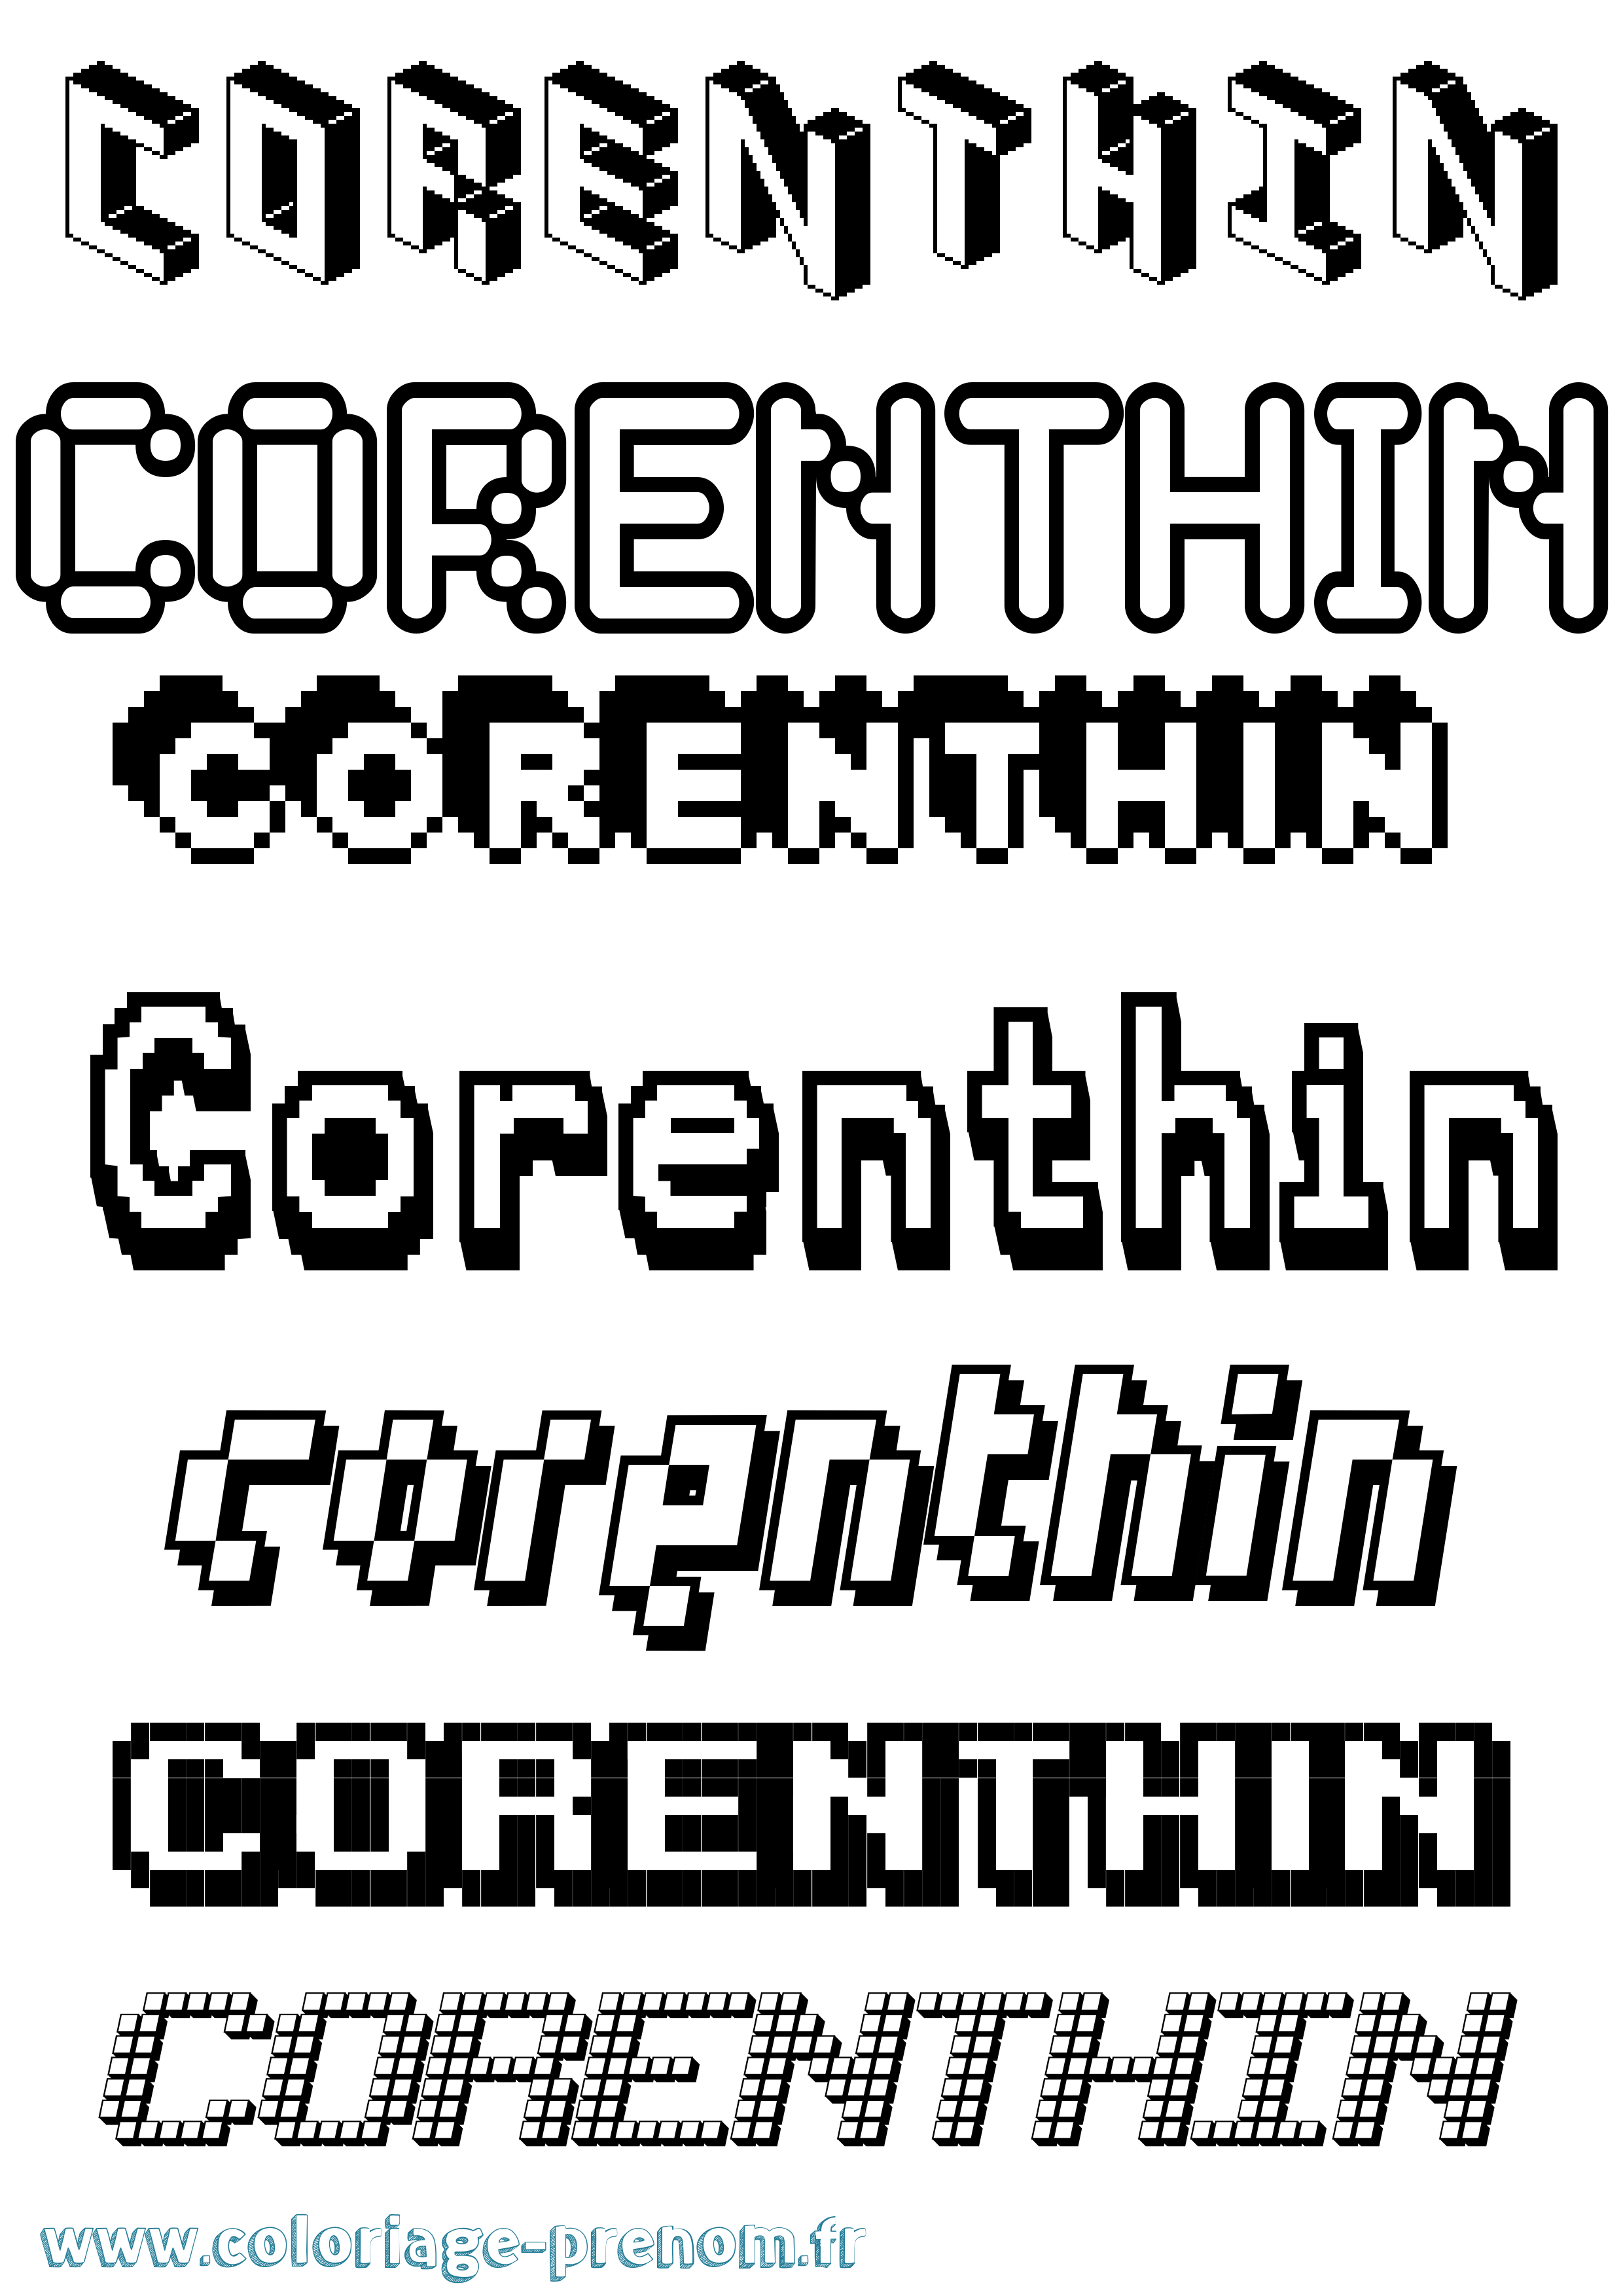 Coloriage prénom Corenthin Pixel